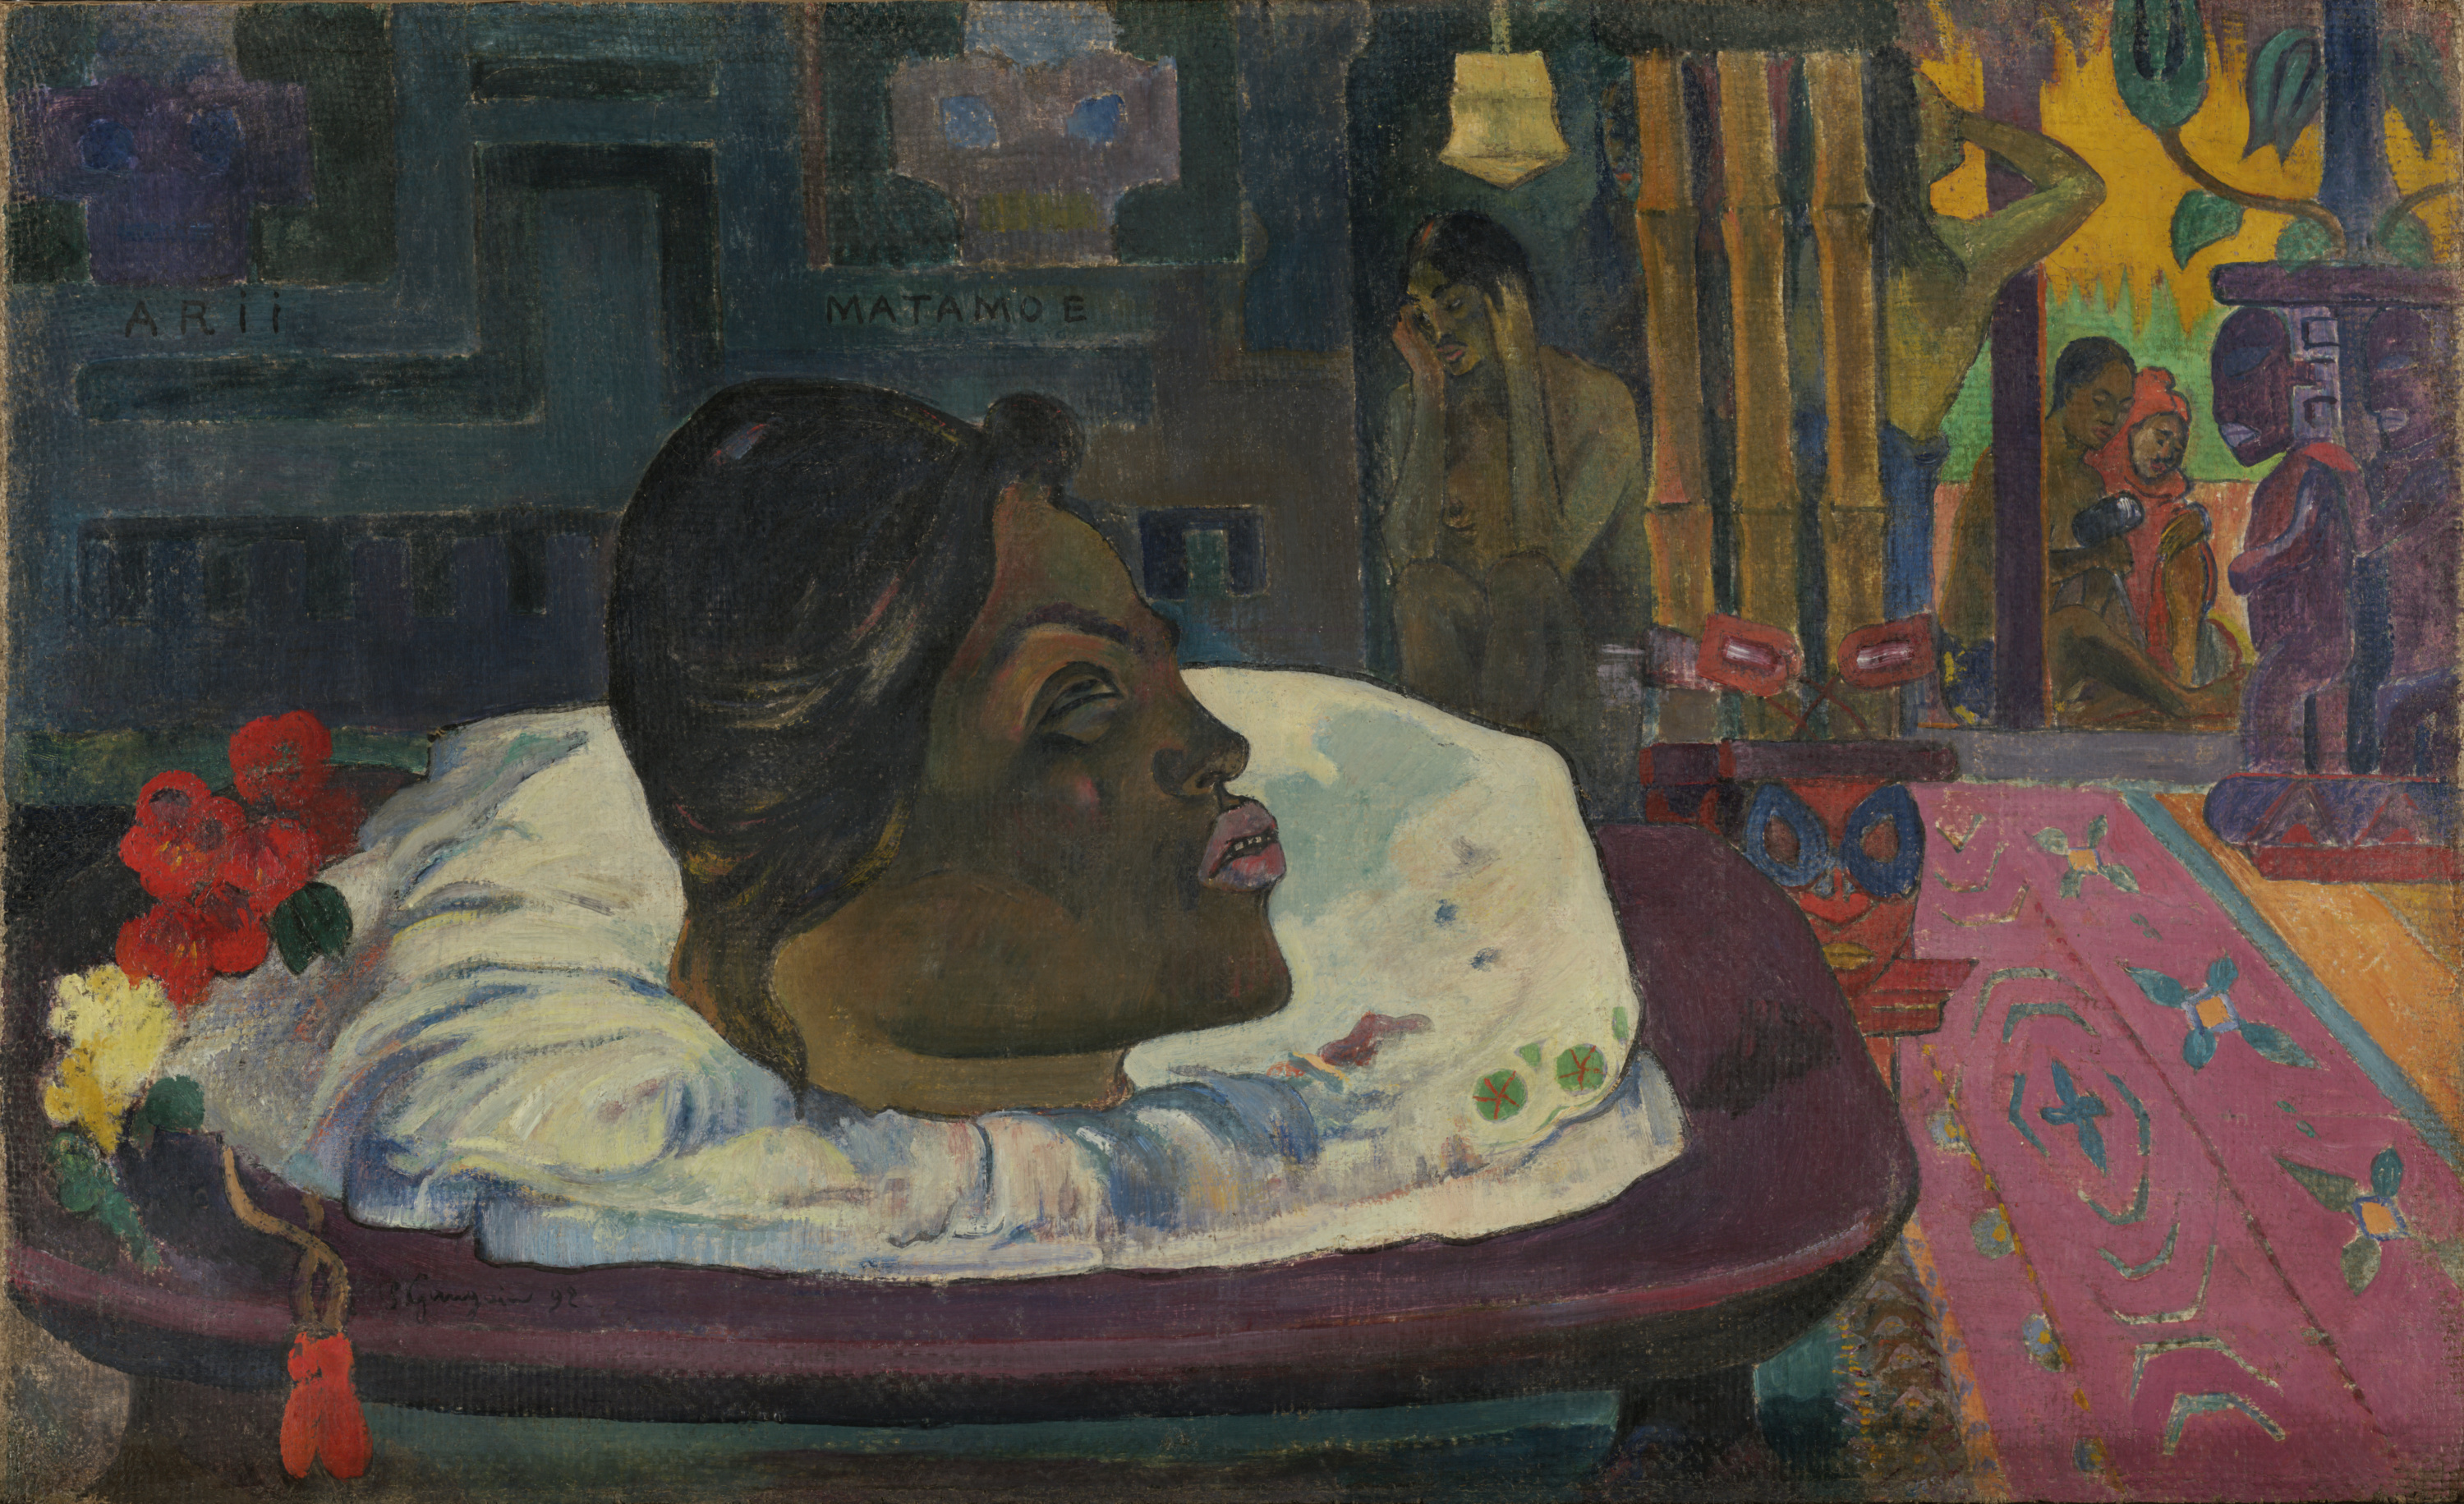 Arii Matamoe (The Royal End) by Paul Gauguin - 1892 - 45.1 × 74.3 cm 